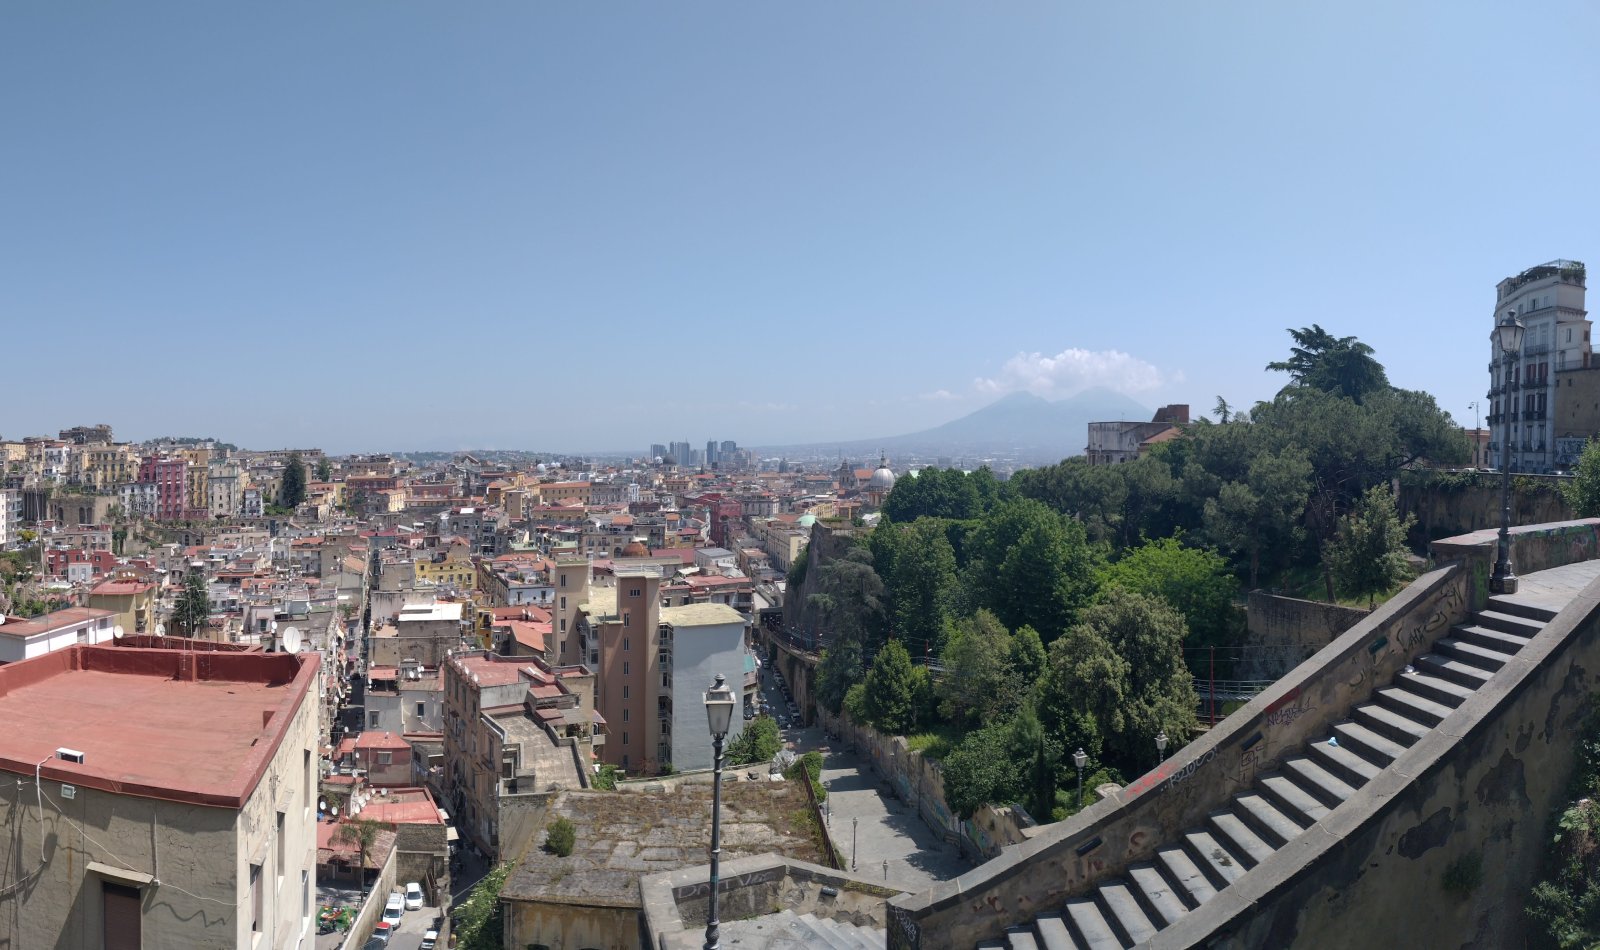 Pedamentina de Nápoles vista de cima